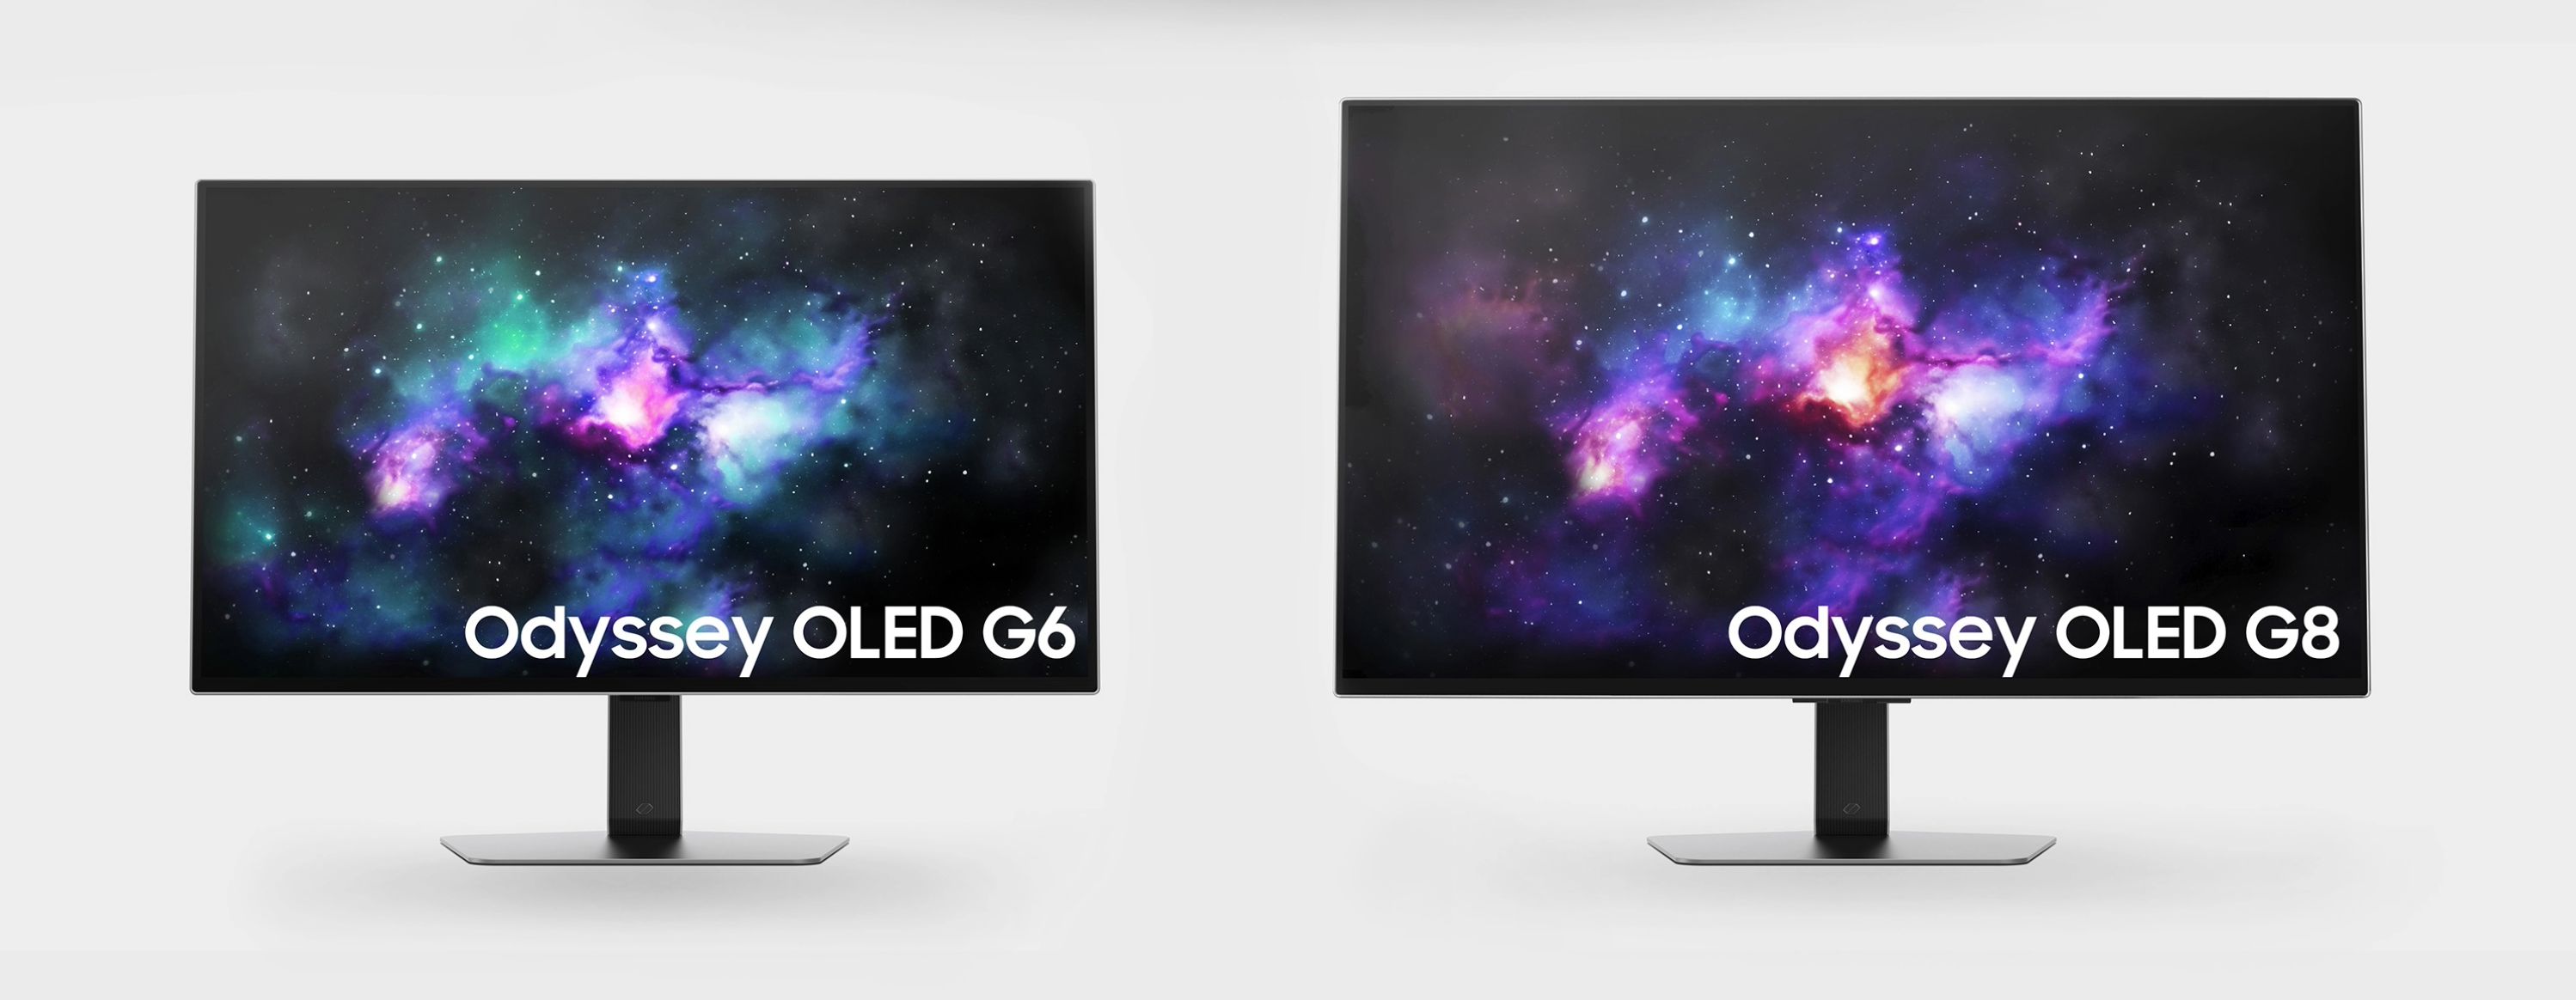 Anunciados em janeiro, os novos Samsung Odyssey OLED G8 e G6 se destacam pelas telas com resolução até 4K e taxa de atualização de até 360 Hz (Imagem: Divulgação/Samsung)